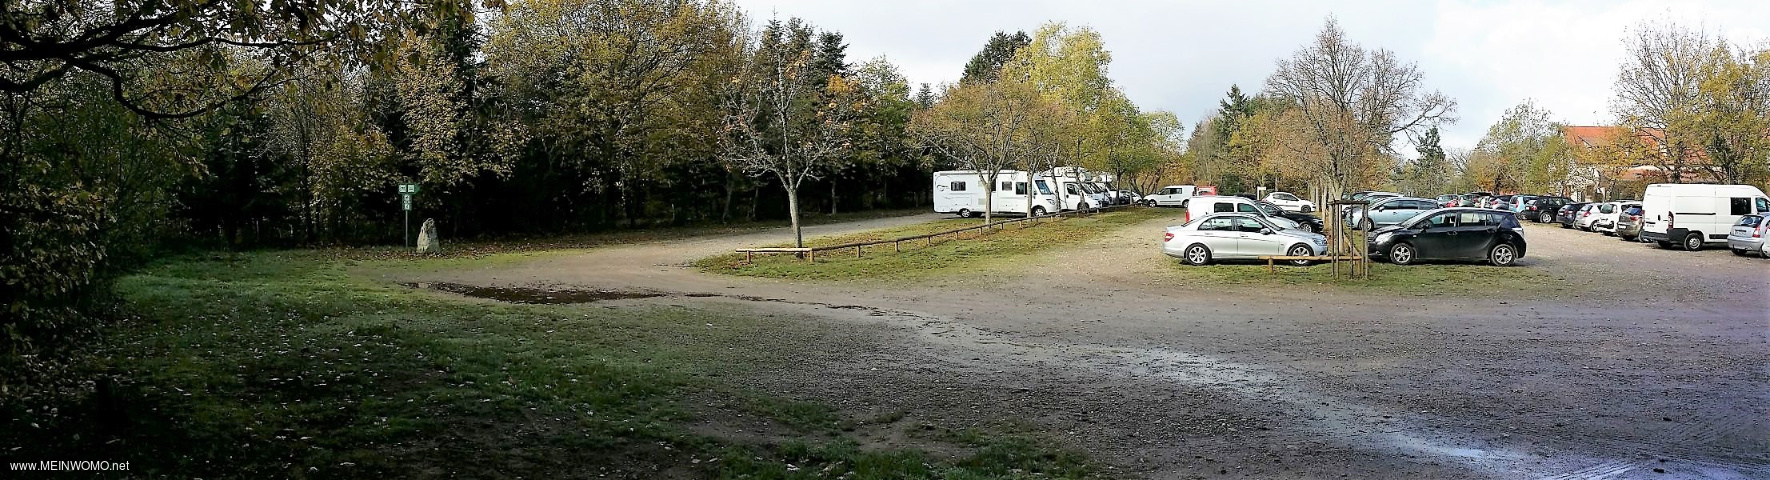  Dernire range indique comme tant un parc de vhicules de camping